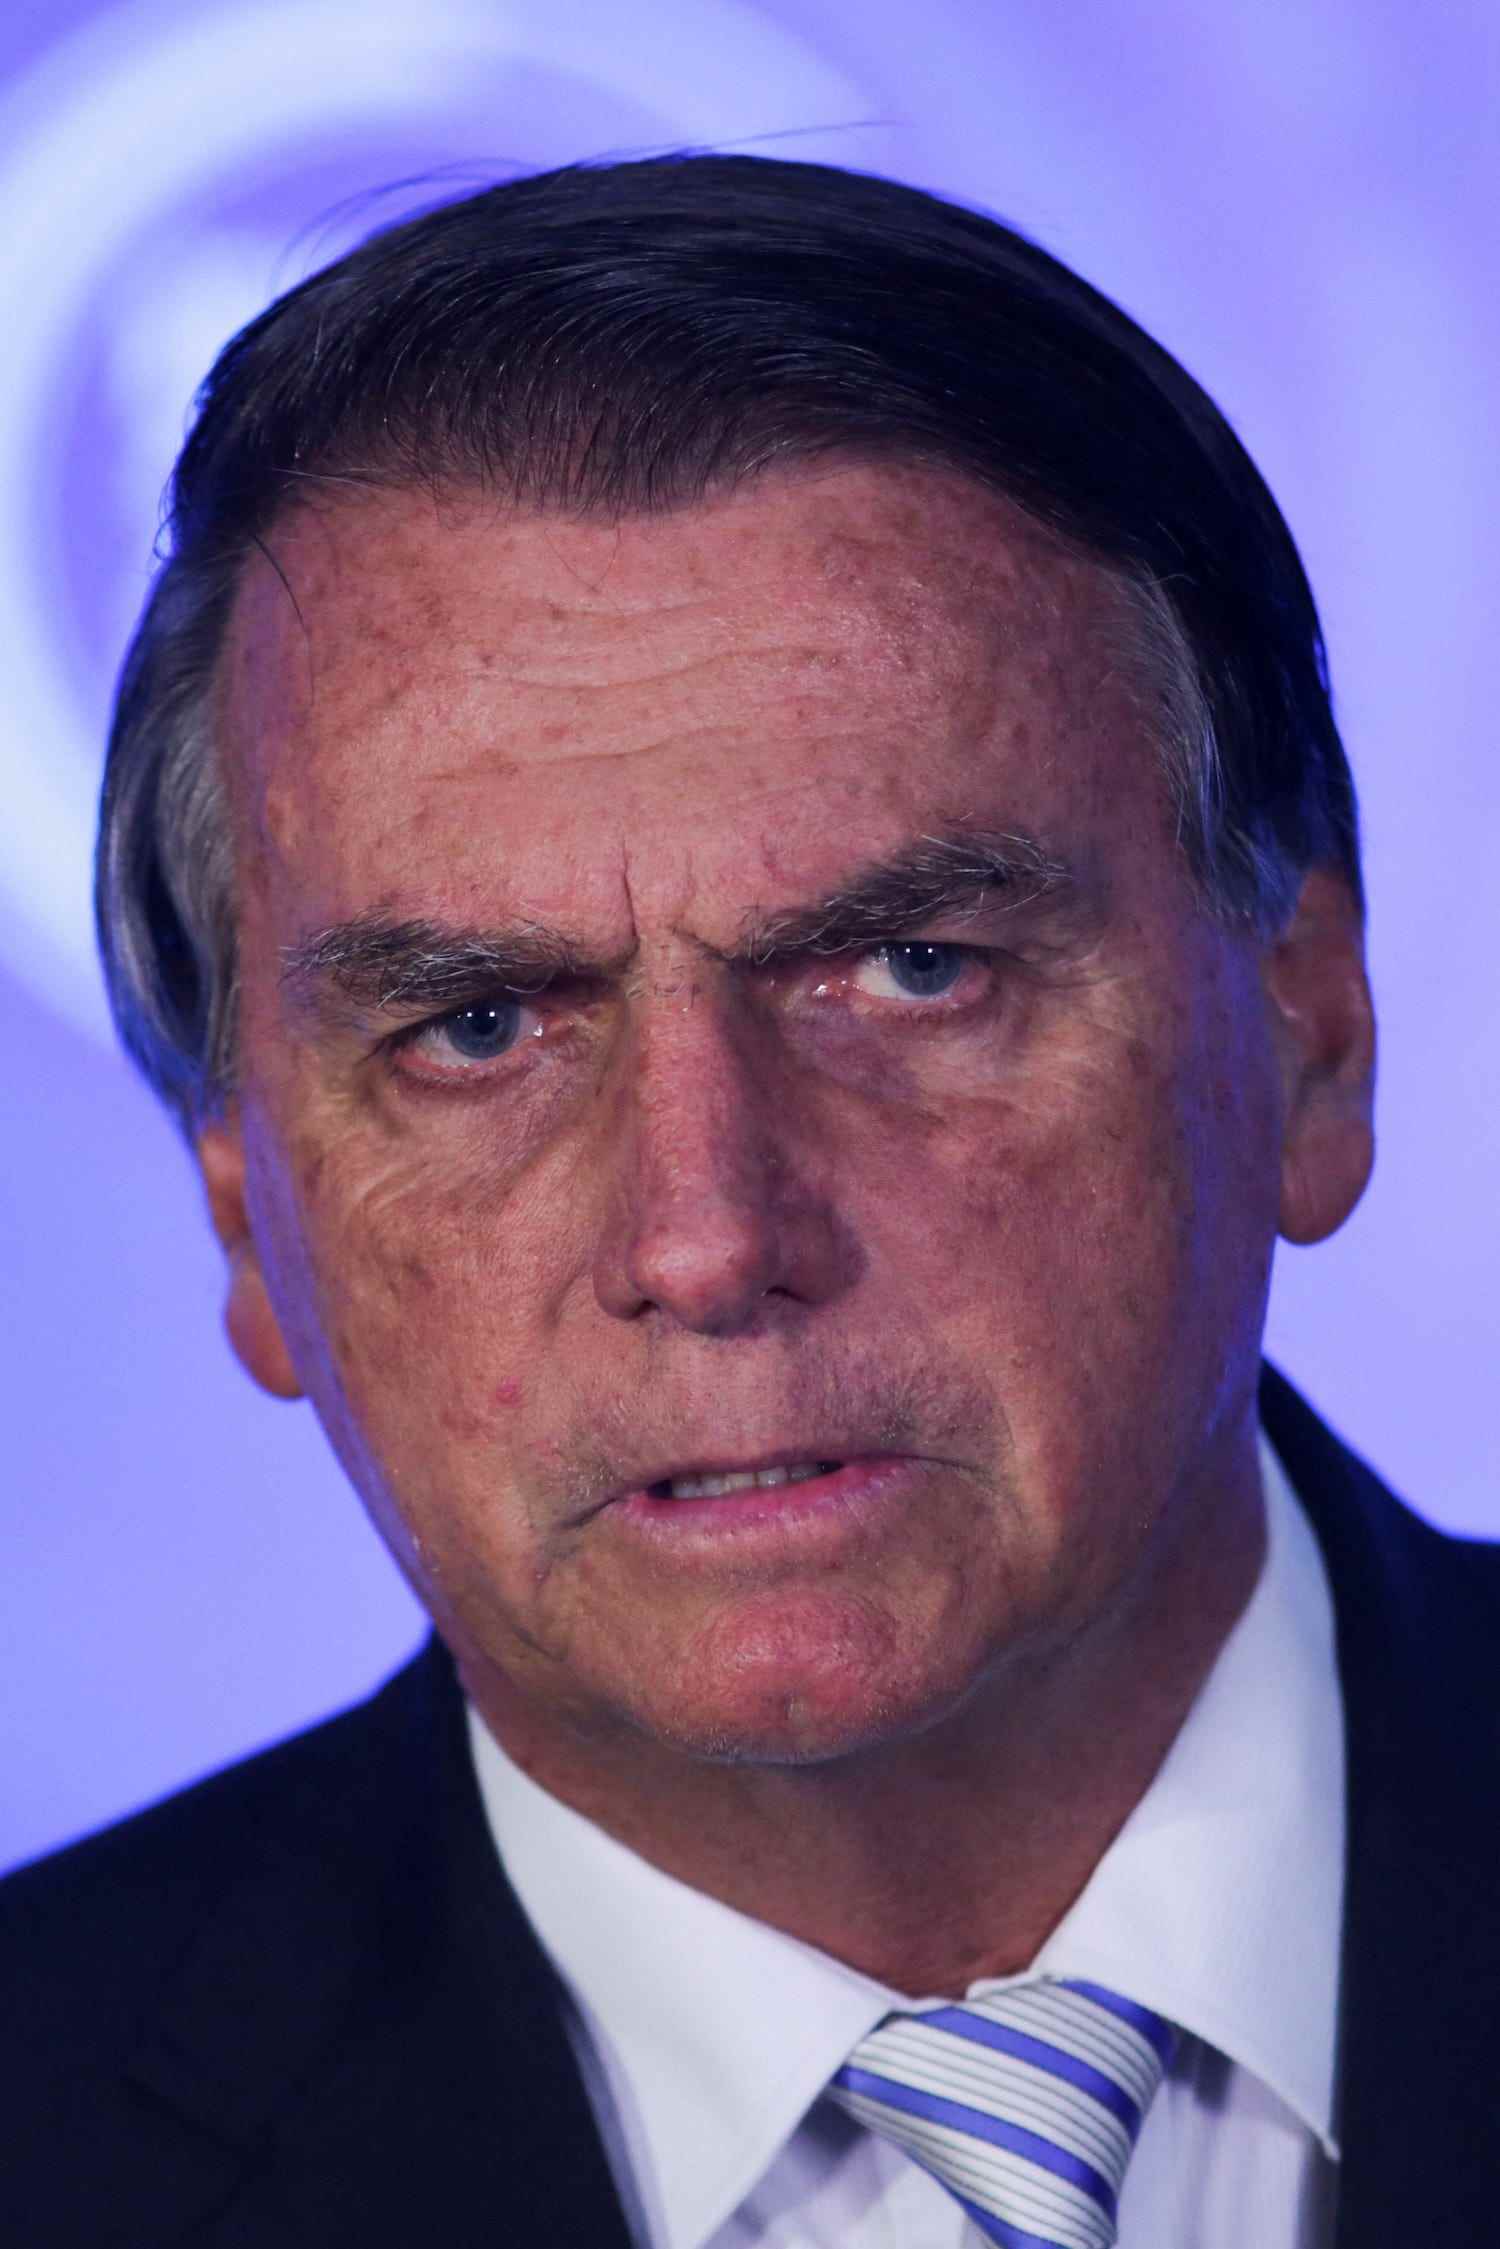 Jair Bolsonaro vor lila Hintergrund